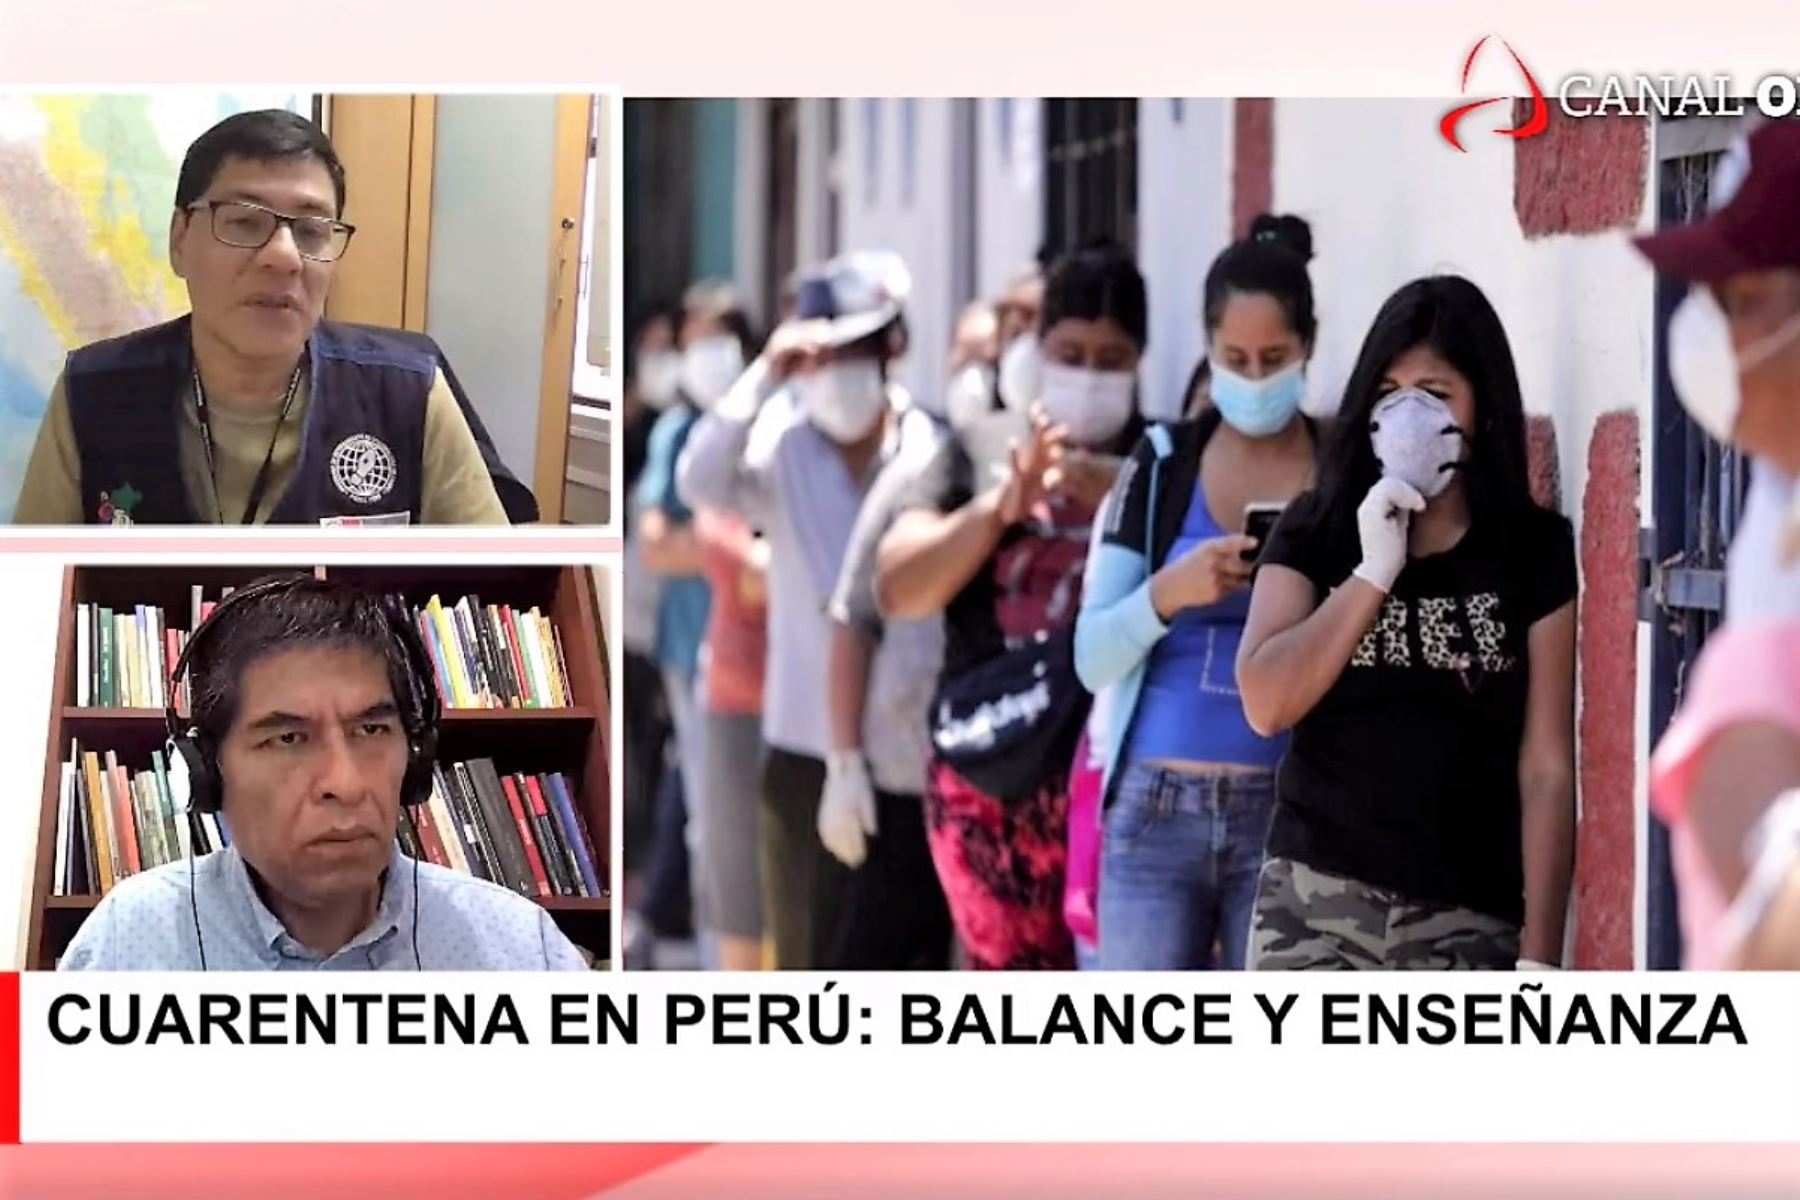 Epidemiólogo César Munayco Escate, entrevistado en 